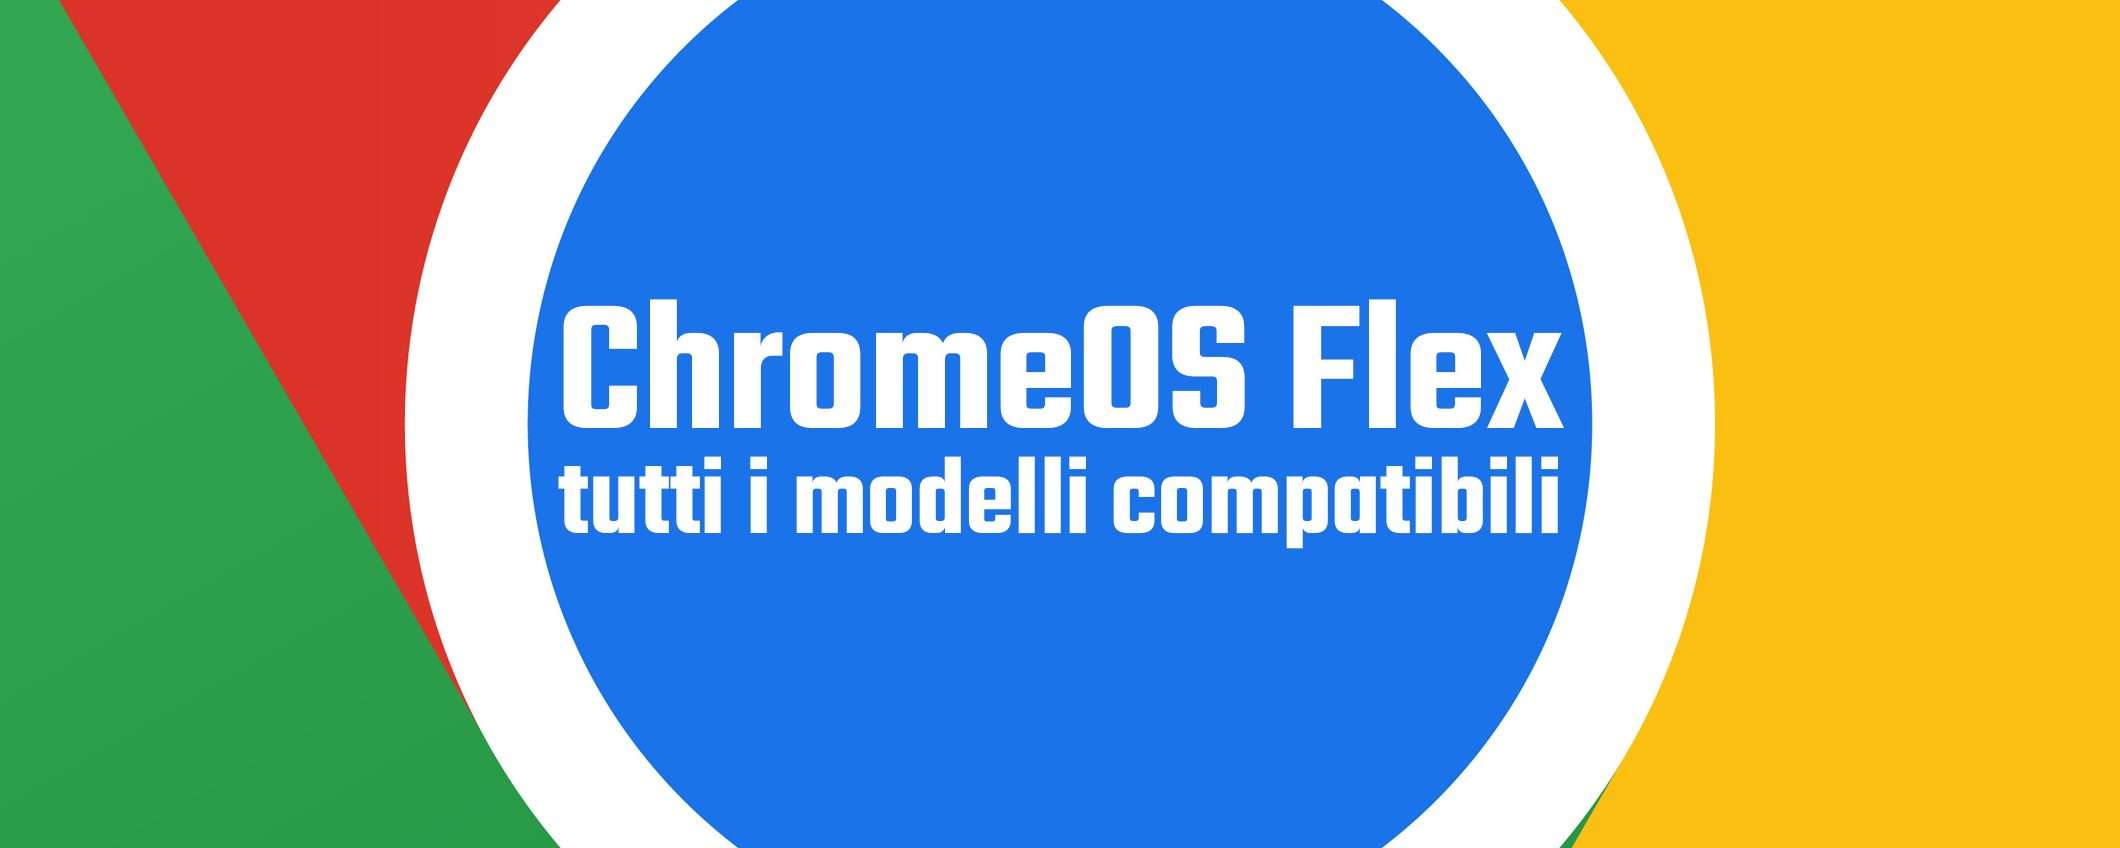 ChromeOS Flex: tutti i modelli compatibili